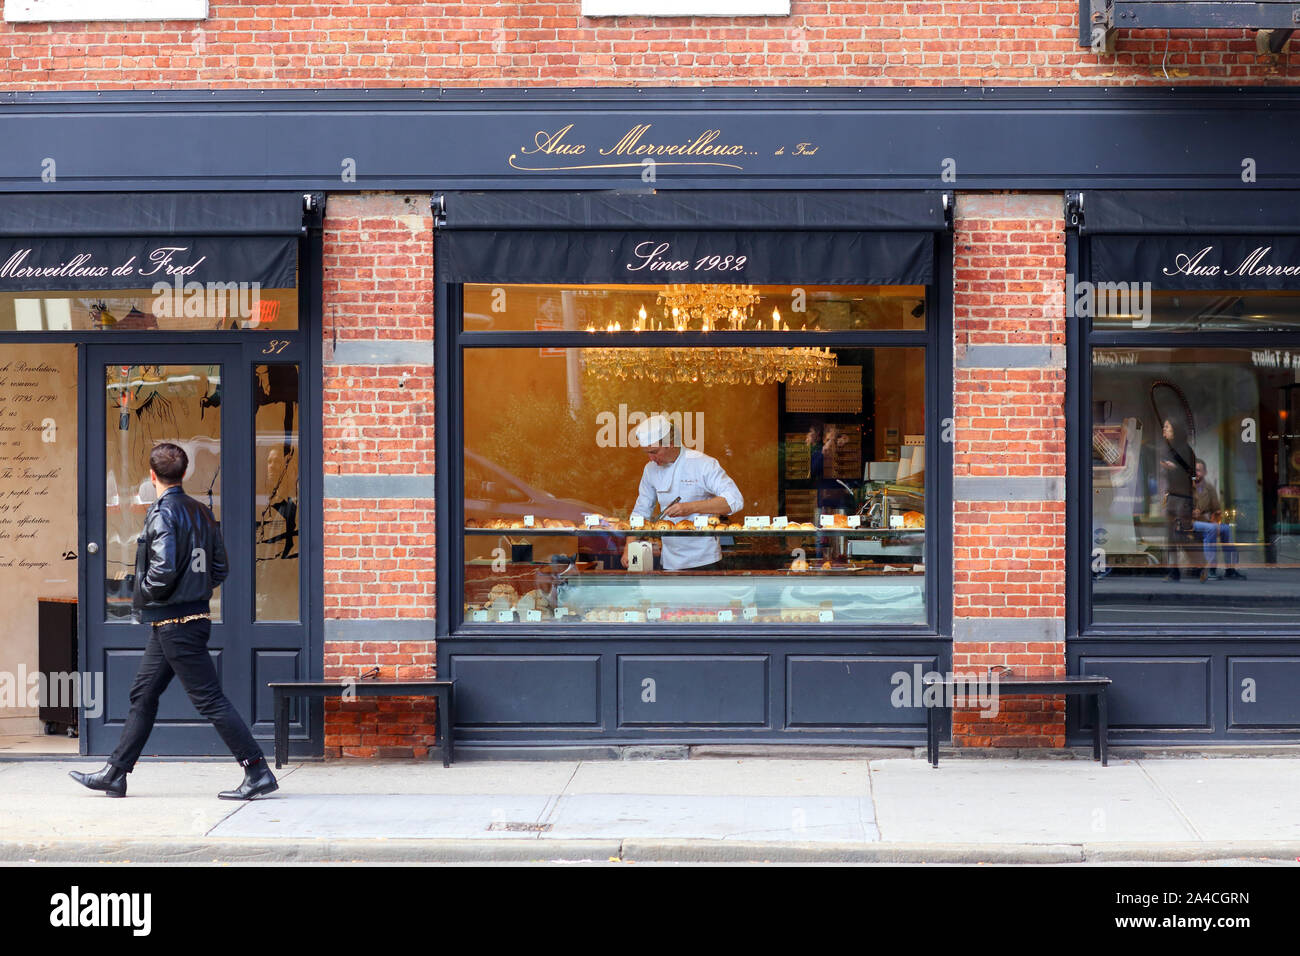 Aux merveilleux de Fred, 37 8e Avenue, New York, NY devanture extérieure d'une pâtisserie française à Manhattan, dans le Greenwich Village. Banque D'Images